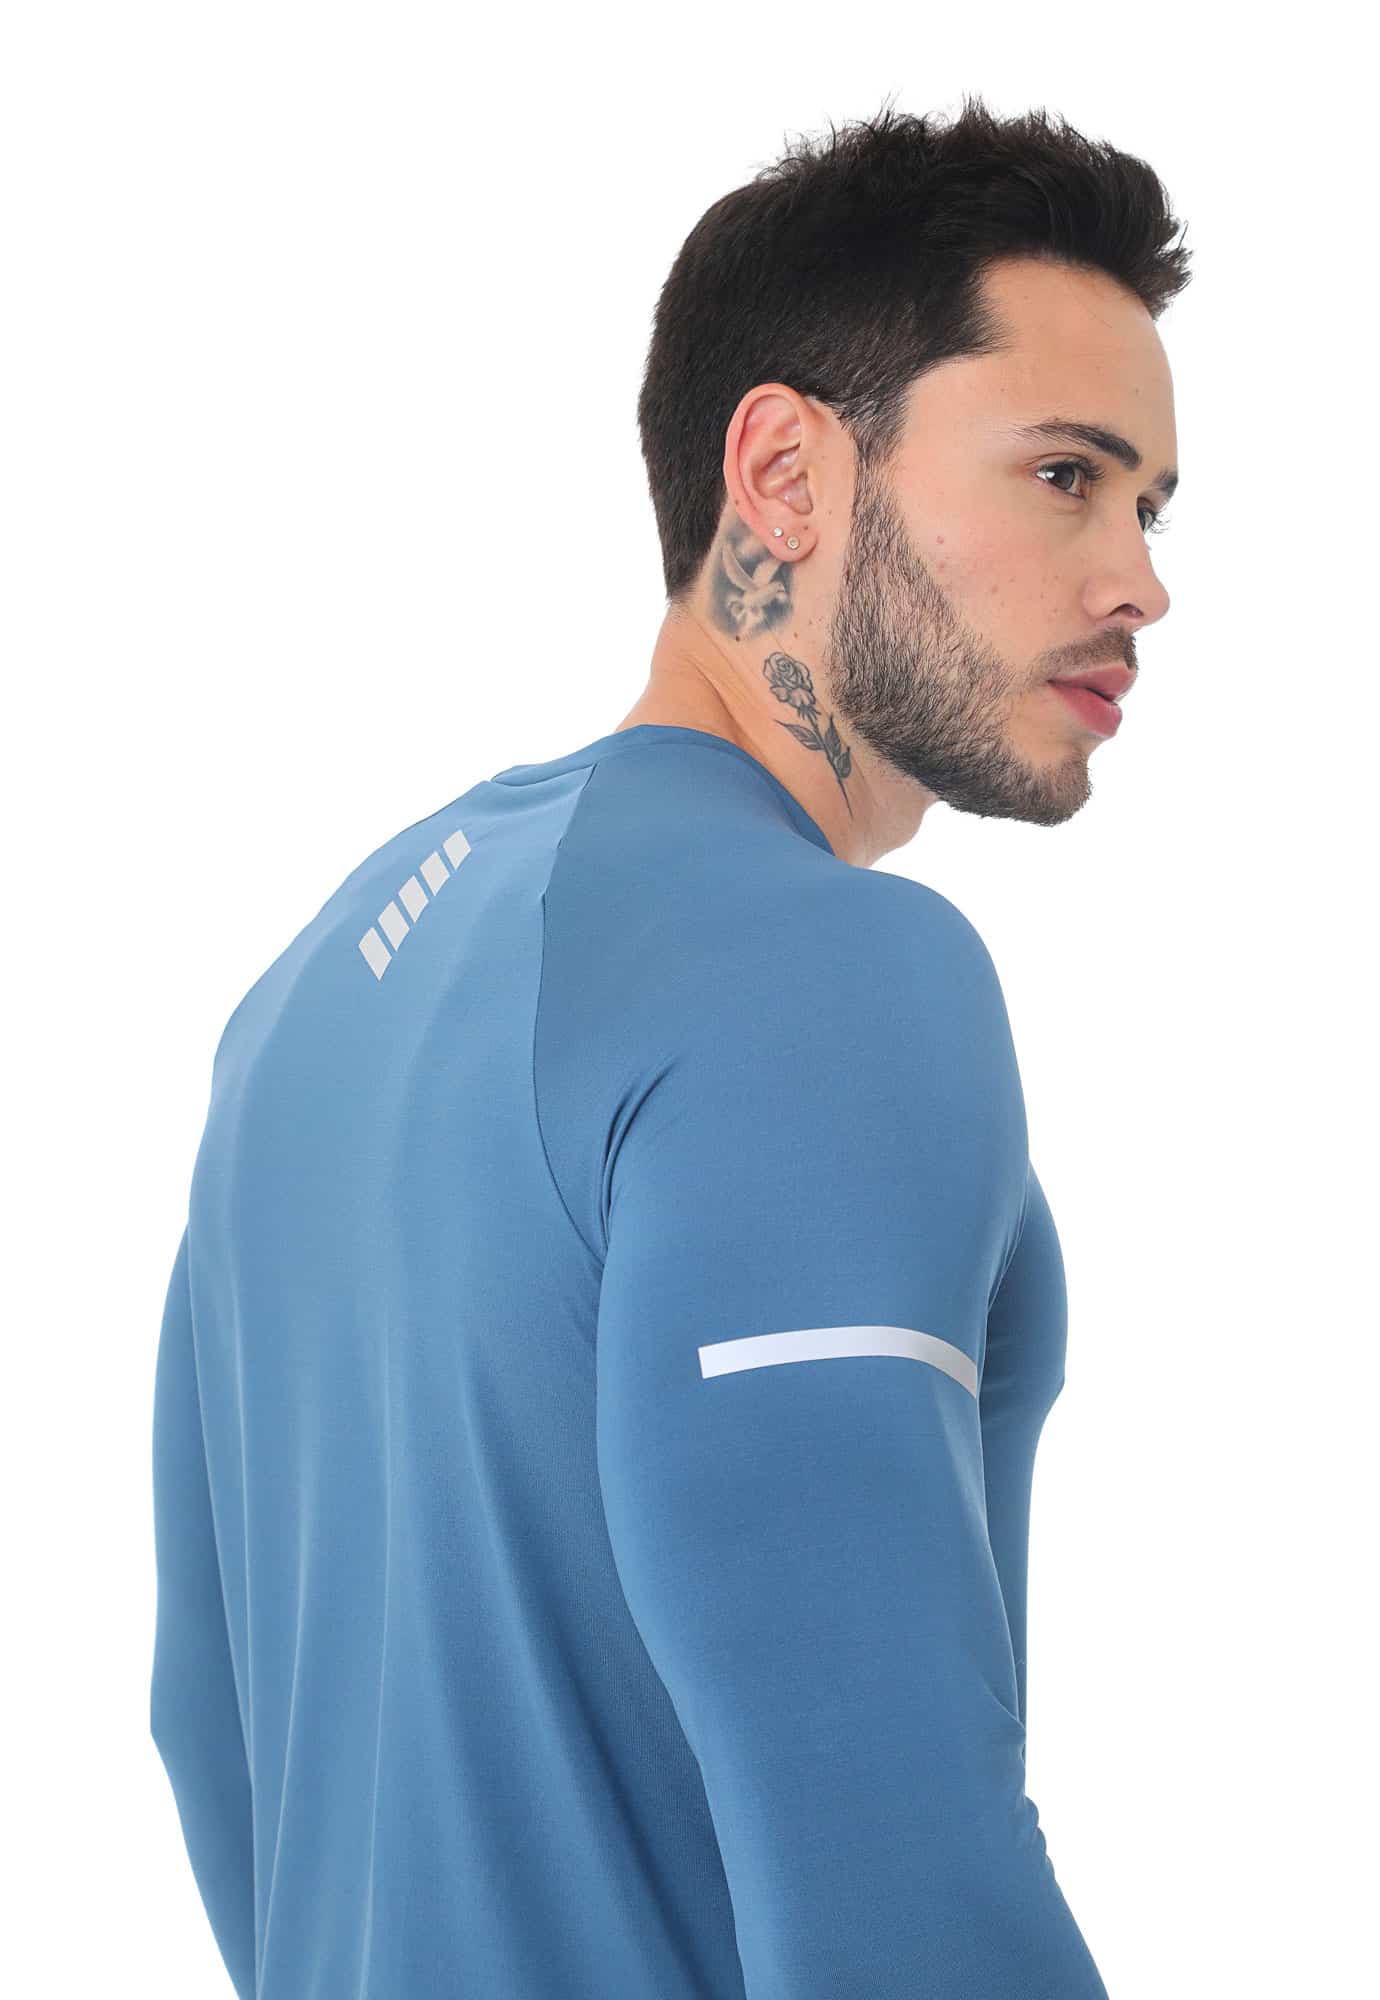 Camiseta deportiva azul petro, manga larga detalles reflectivos en frente para hombre